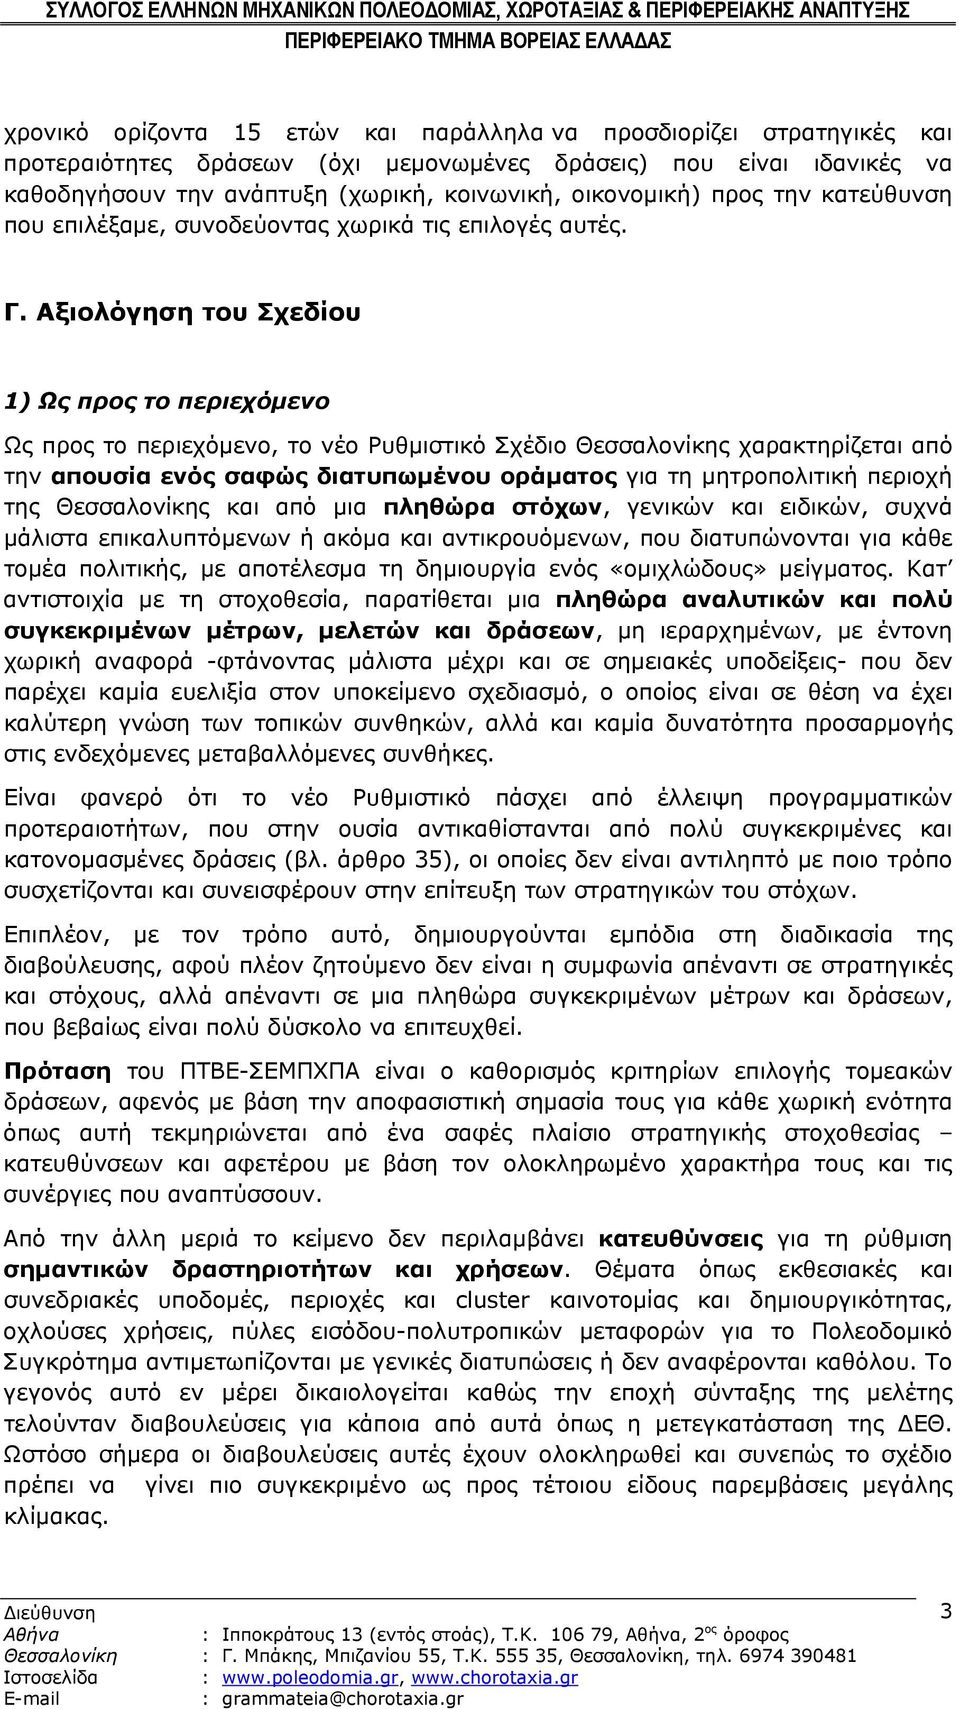 Αξιολόγηση του Σχεδίου 1) Ως προς το περιεχόμενο Ως προς το περιεχόμενο, το νέο Ρυθμιστικό Σχέδιο Θεσσαλονίκης χαρακτηρίζεται από την απουσία ενός σαφώς διατυπωμένου οράματος για τη μητροπολιτική